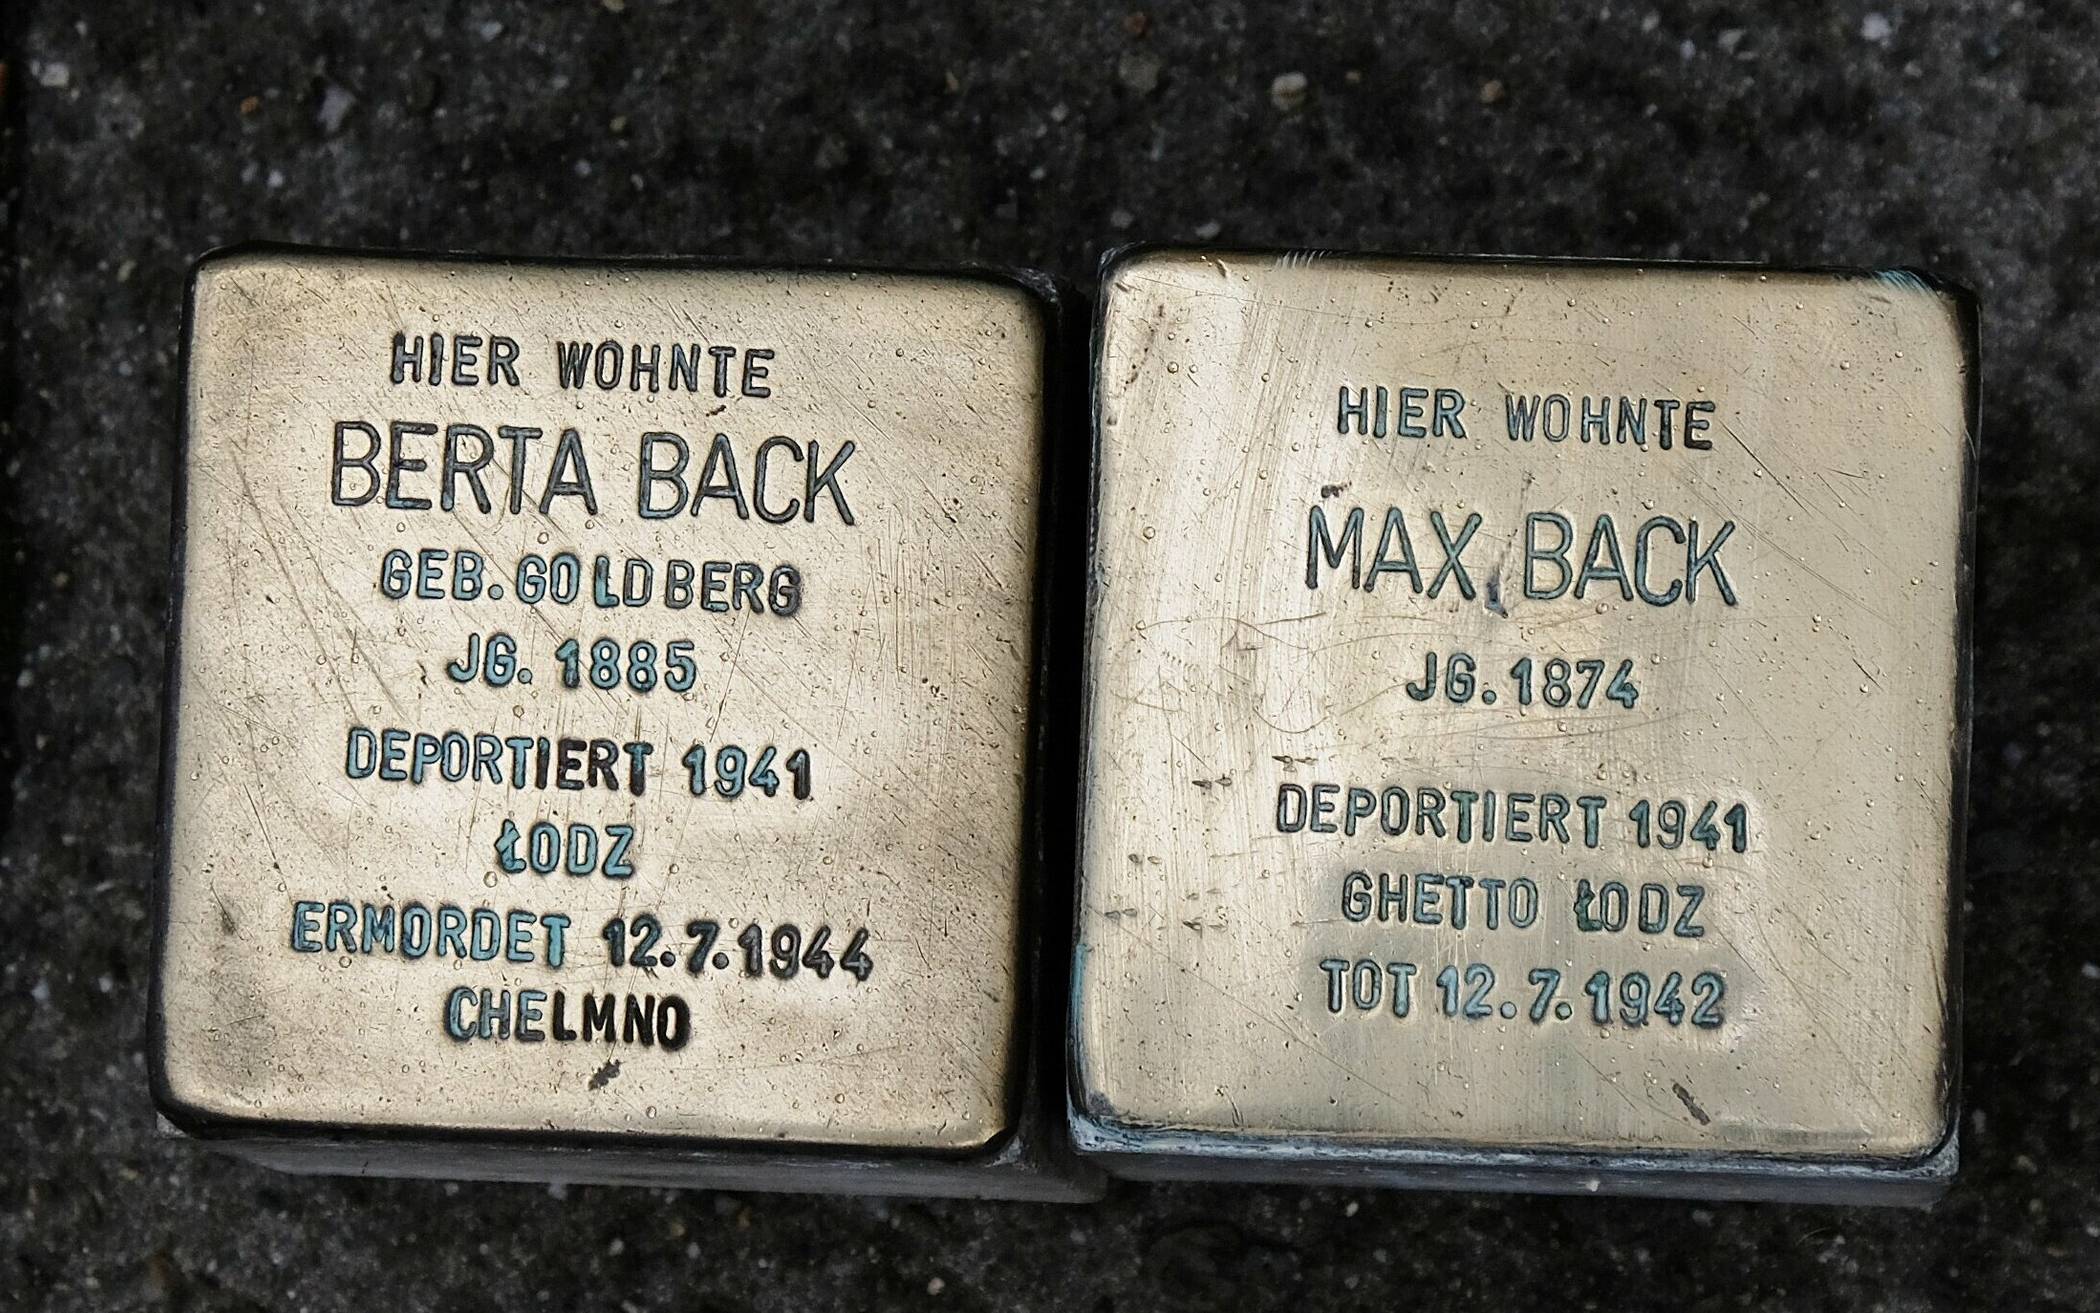  Die beiden Stolpersteine, die an der Venloer Straße 11 an das Ehepaar Berta und Max Back erinnern, kehrten nun an ihren ursprünglichen Standort zurück. 